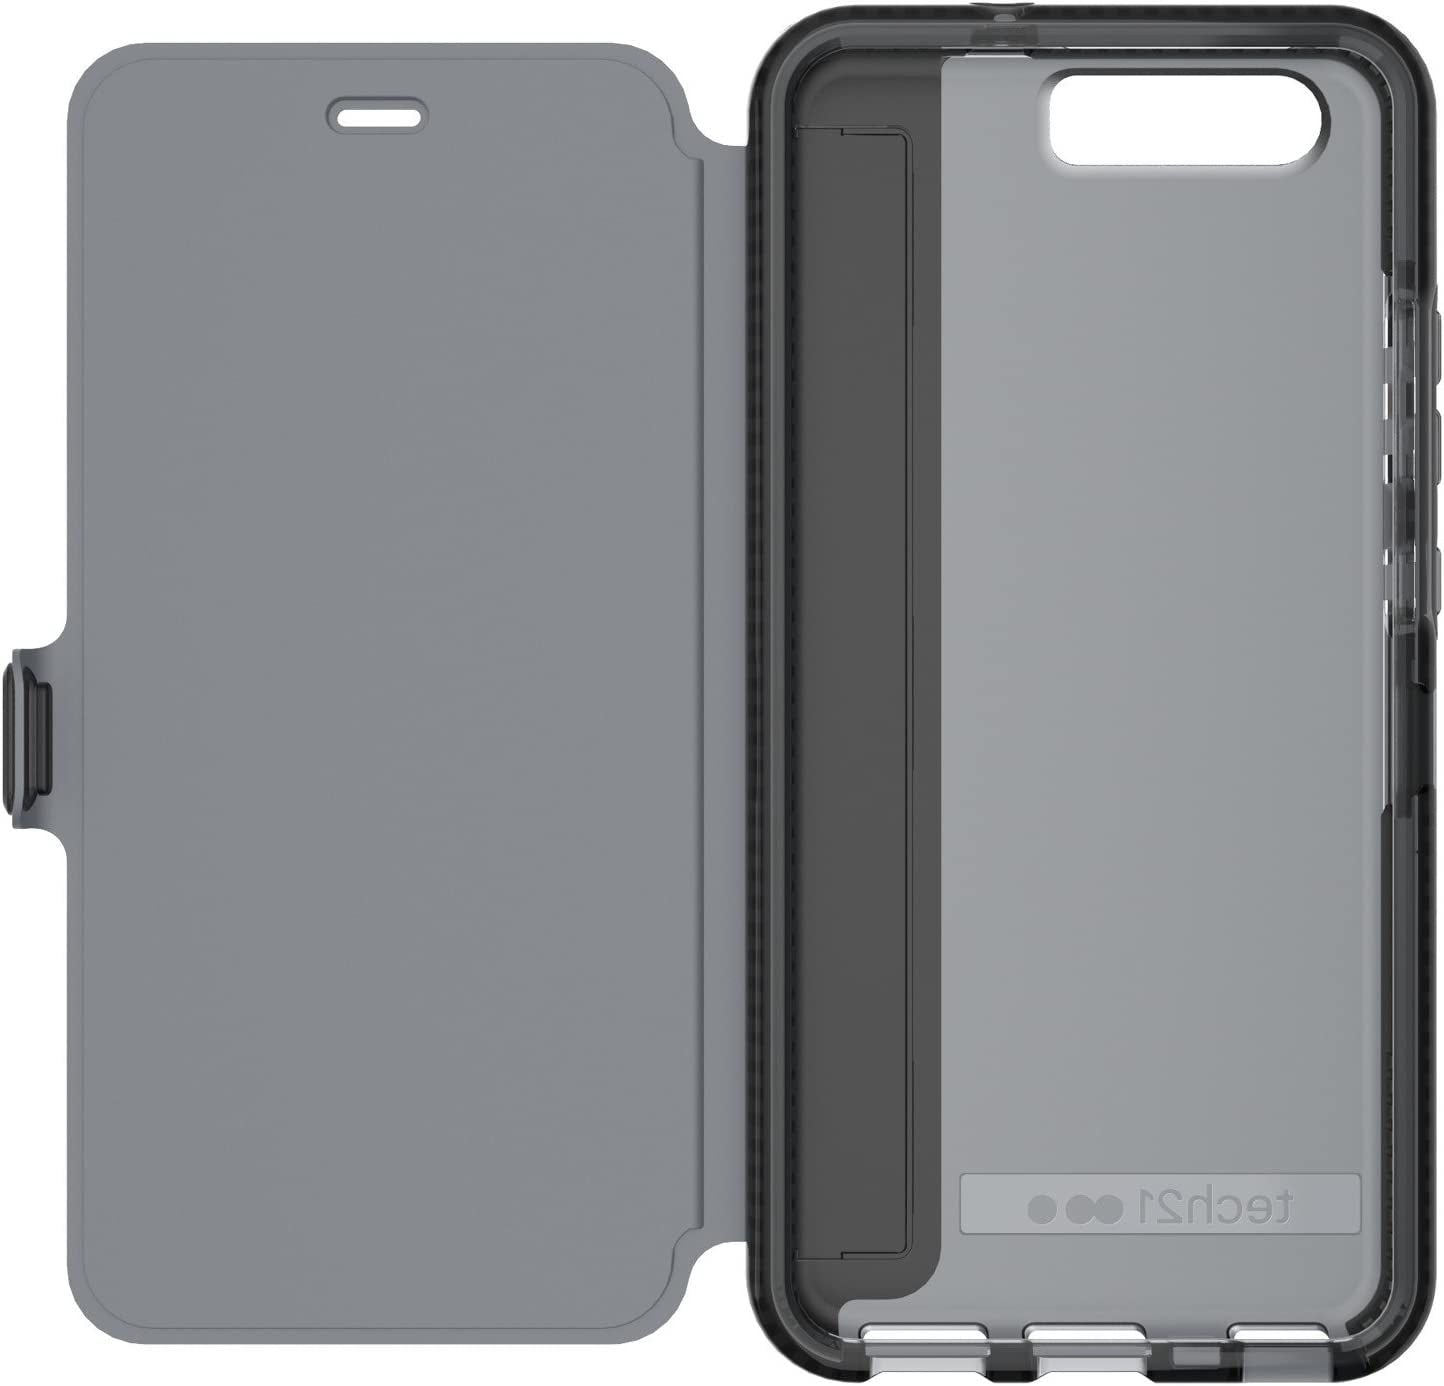 Tech 21 Evo Wallet Black Huawei P10 Mobile Phone Case